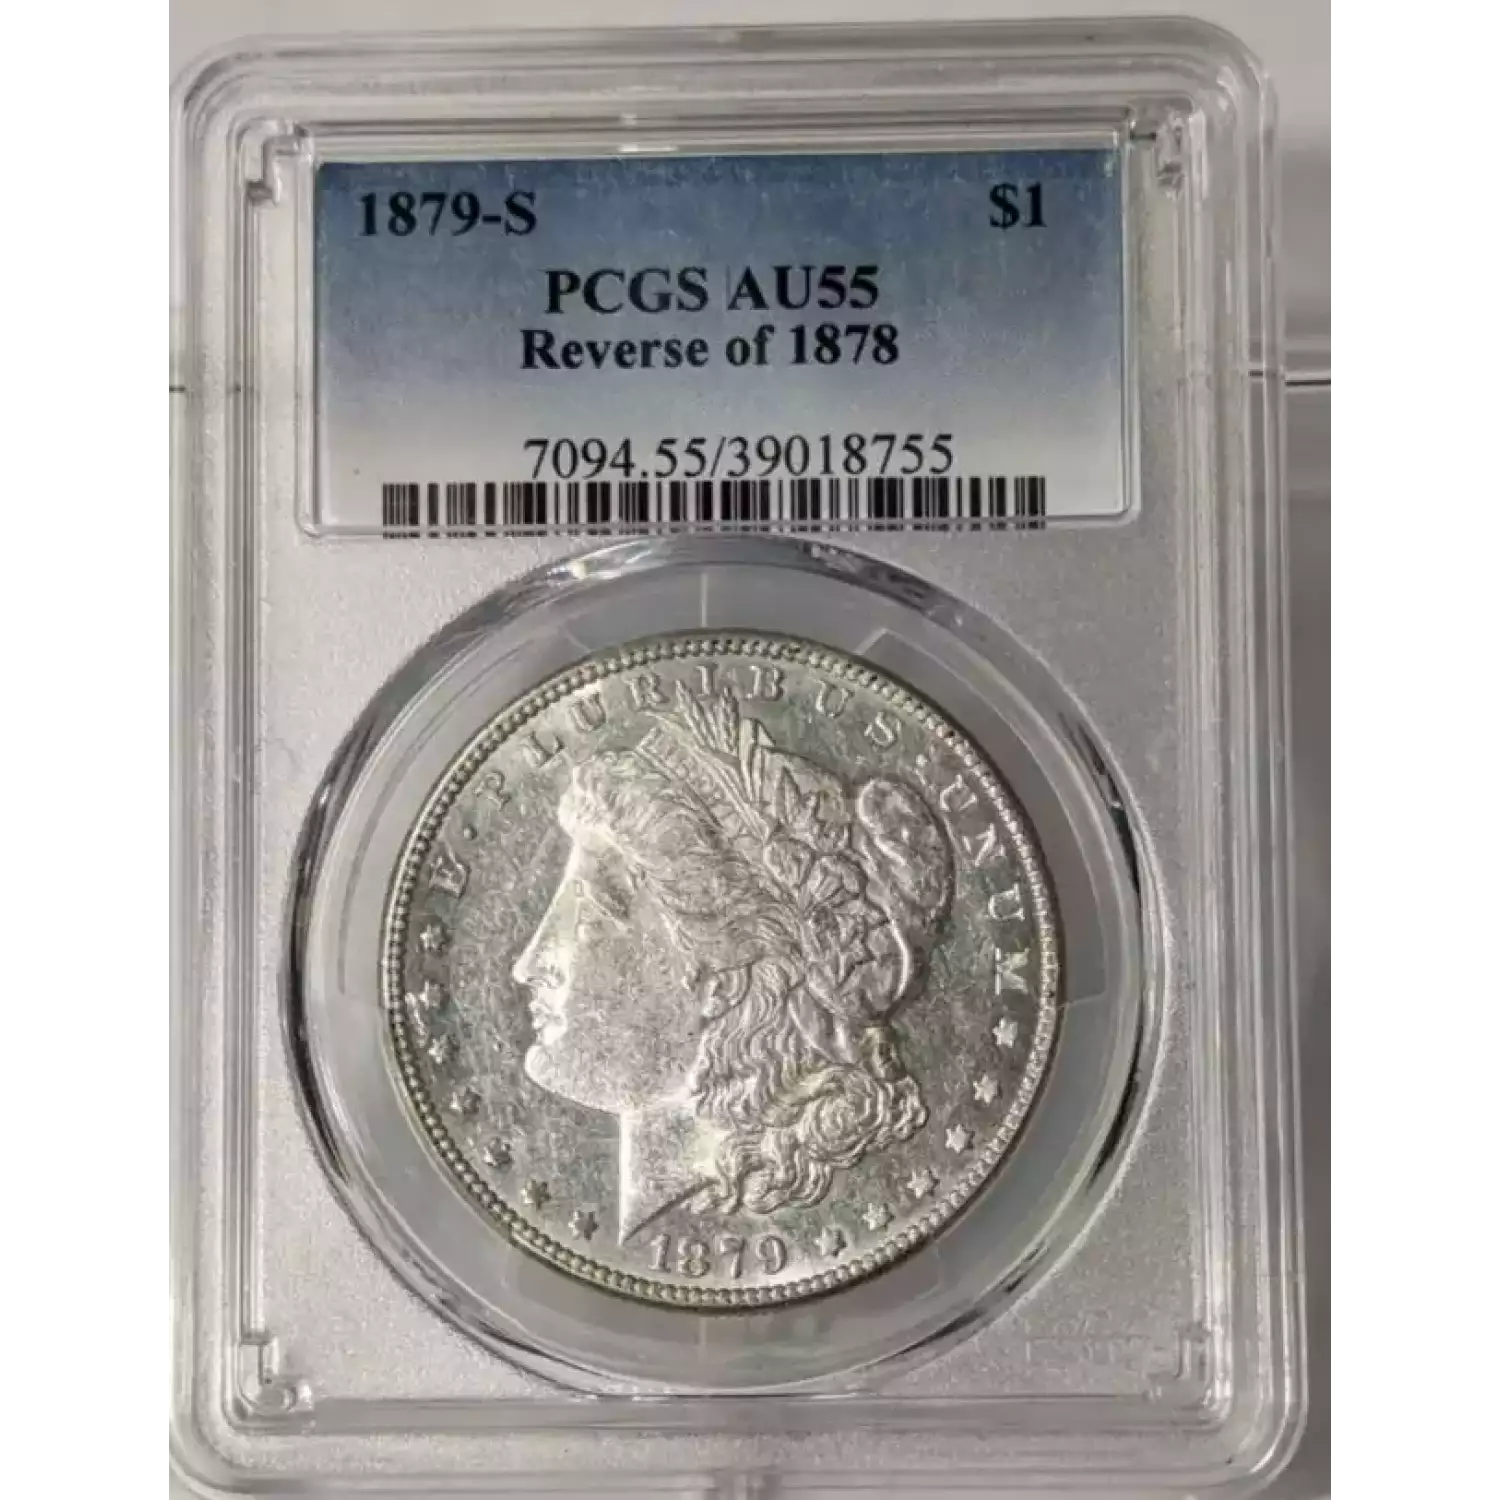 1879-S $1 Reverse of 1878